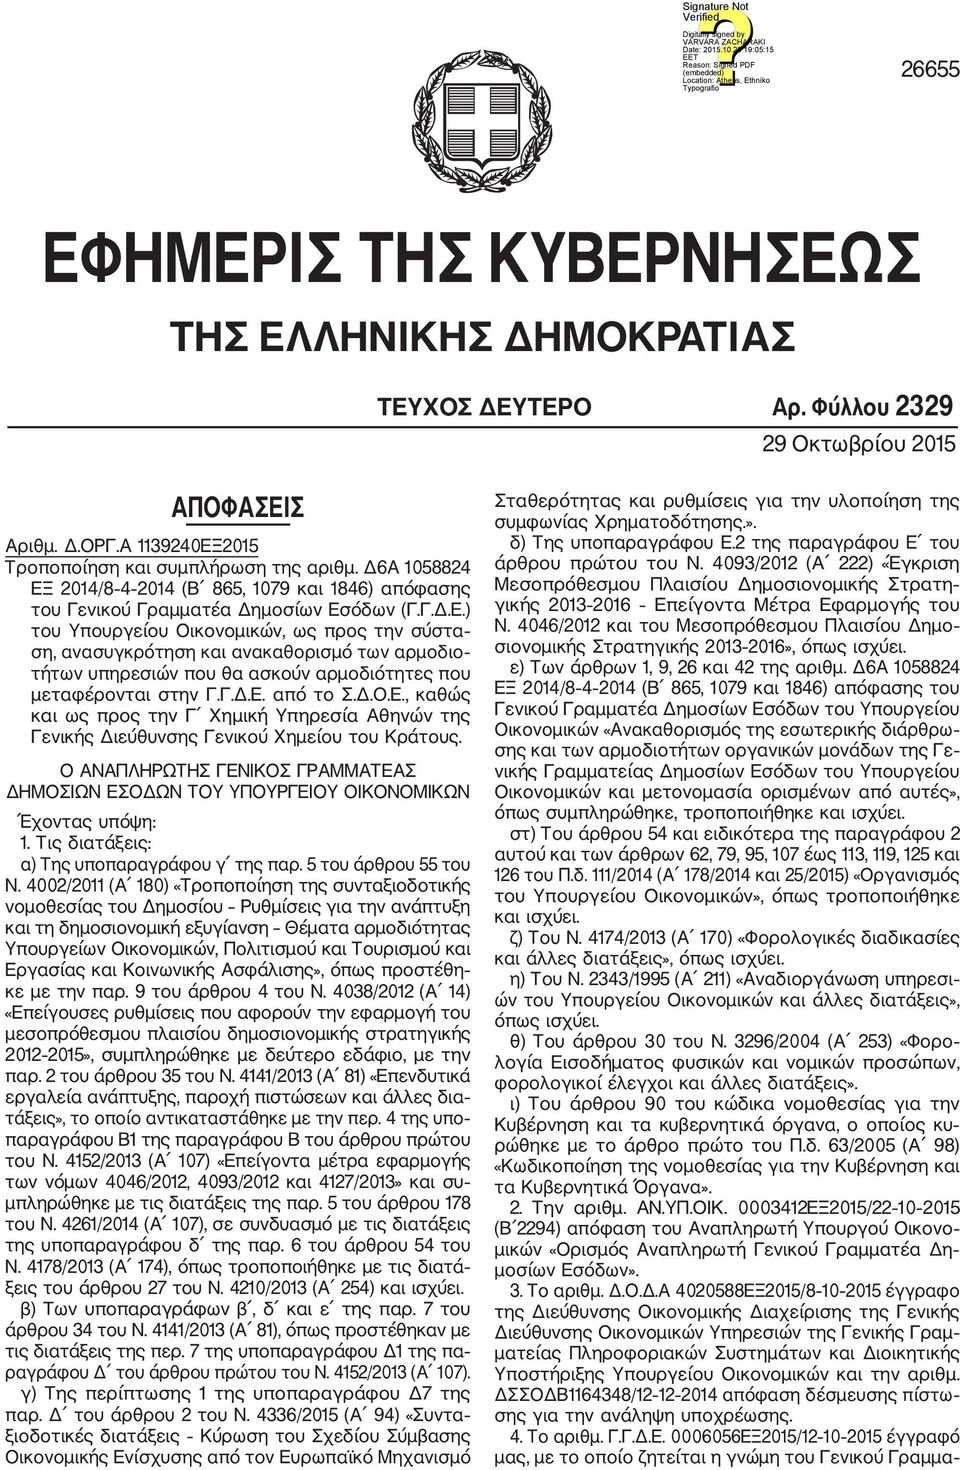 Γ.Δ.Ε. από το Σ.Δ.Ο.Ε., καθώς και ως προς την Γ Χημική Υπηρεσία Αθηνών της Γενικής Διεύθυνσης Γενικού Χημείου του Κράτους.